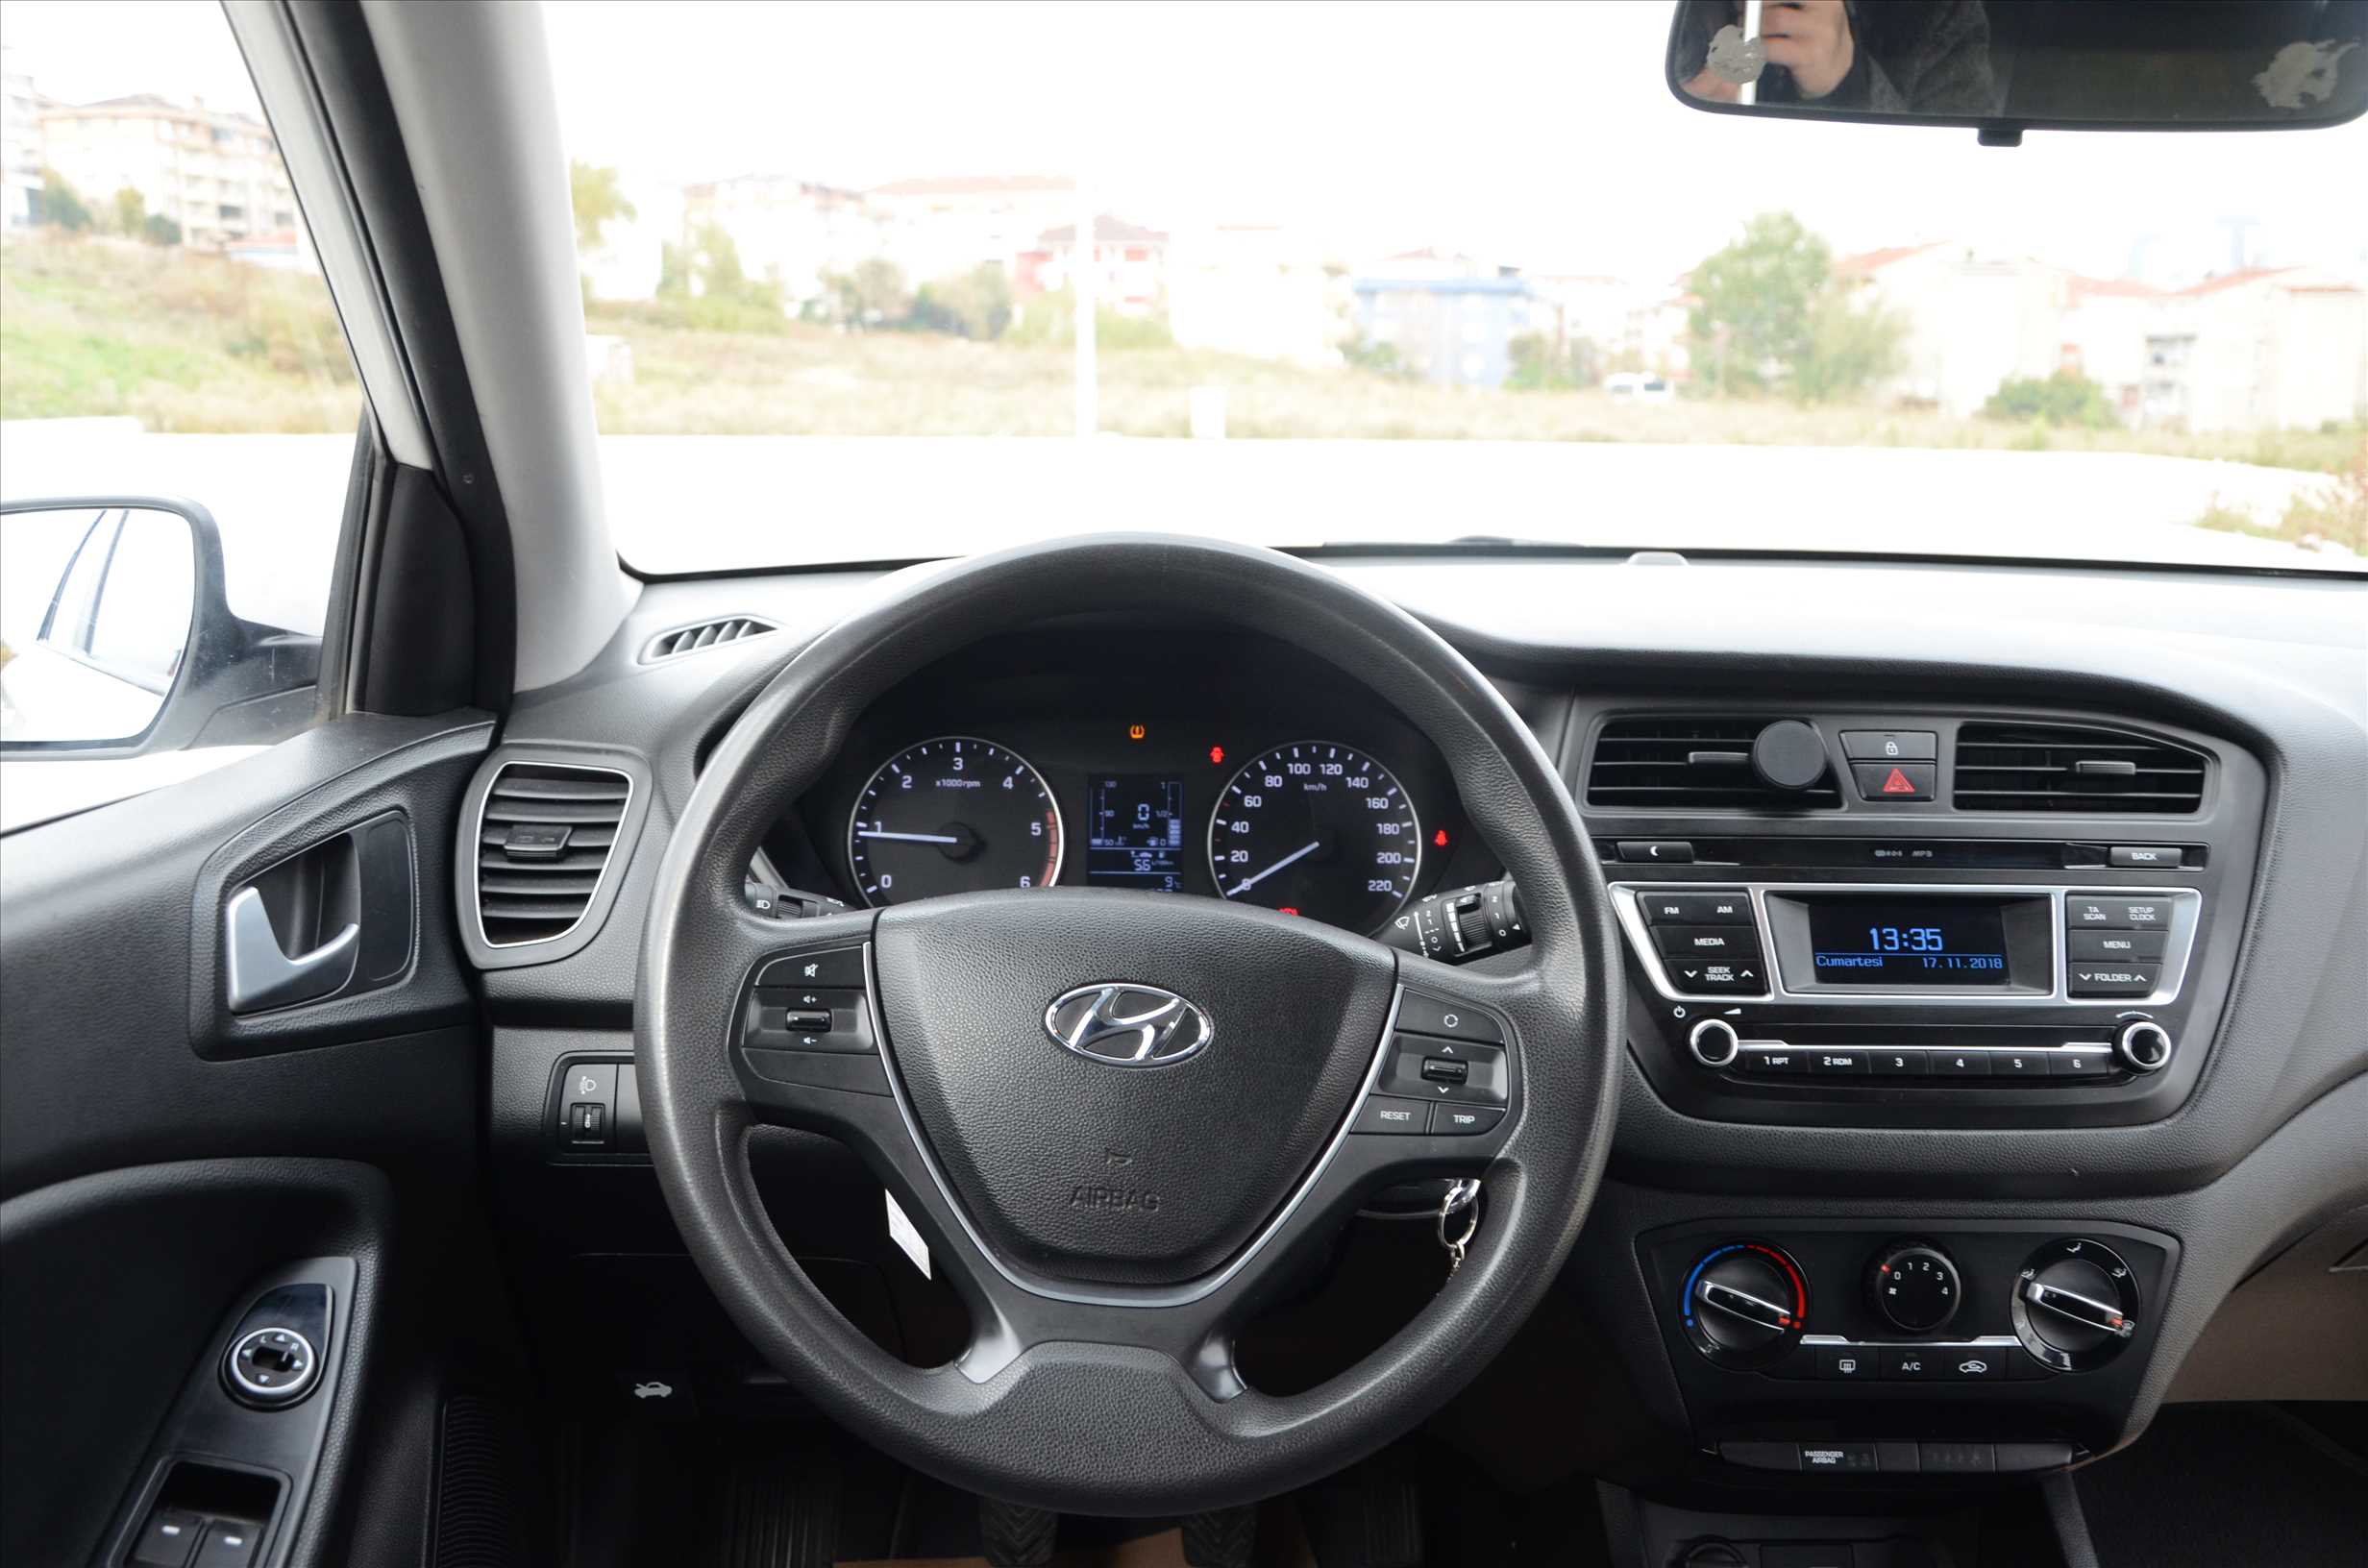   Hyundai i20 1.4 CRDİ JUMP 57000 KM 2016 ÇOK TEMİZ FIRSAT ARACI (Aracımız Satılmıştır)